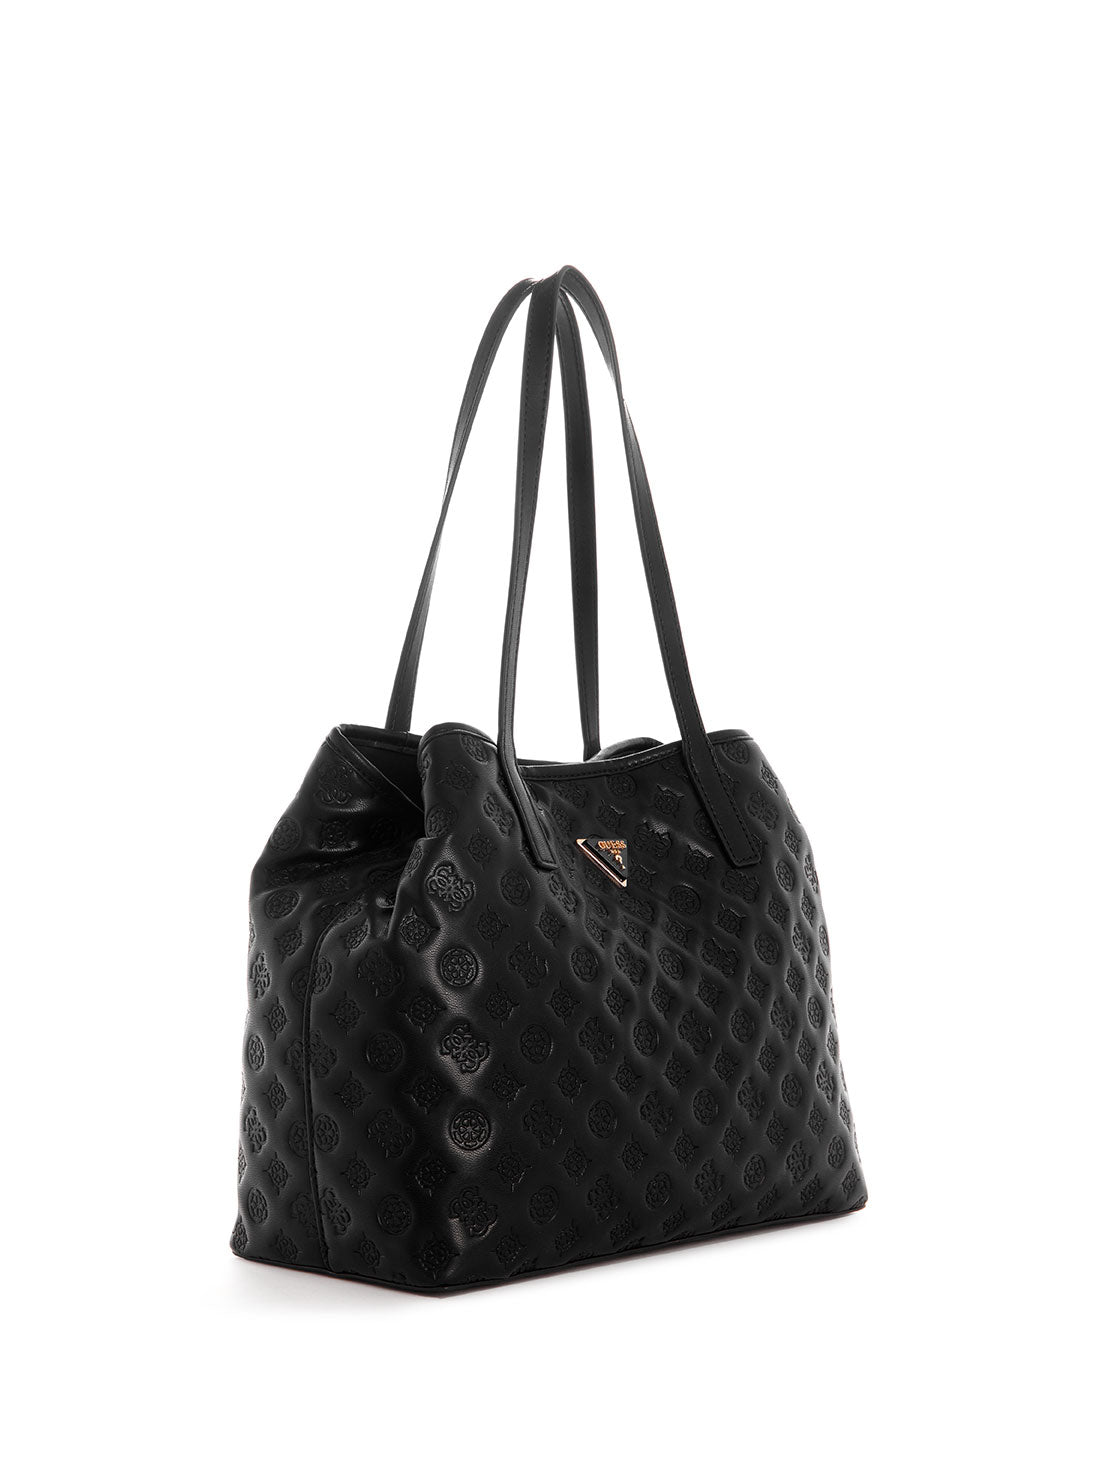 GUESS Women's Black La Femme Vikky Tote Bag LF699523 Front Side View